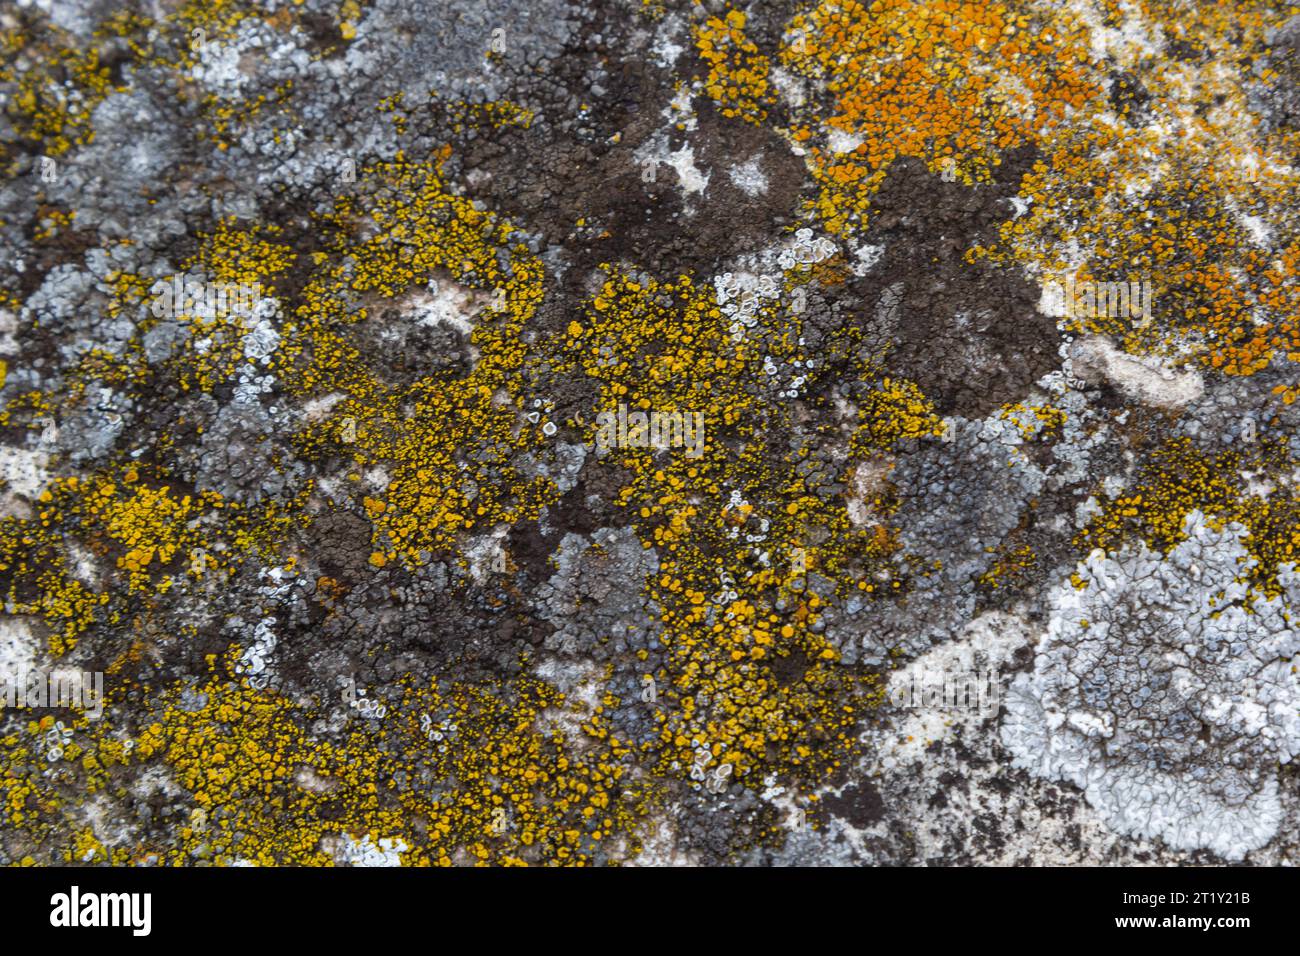 Close up of Xanthoria parietina. Yellow lichen on the bark of a tree. common orange lichen, yellow scale, maritime sunburst lichen and shore lichen. Stock Photo